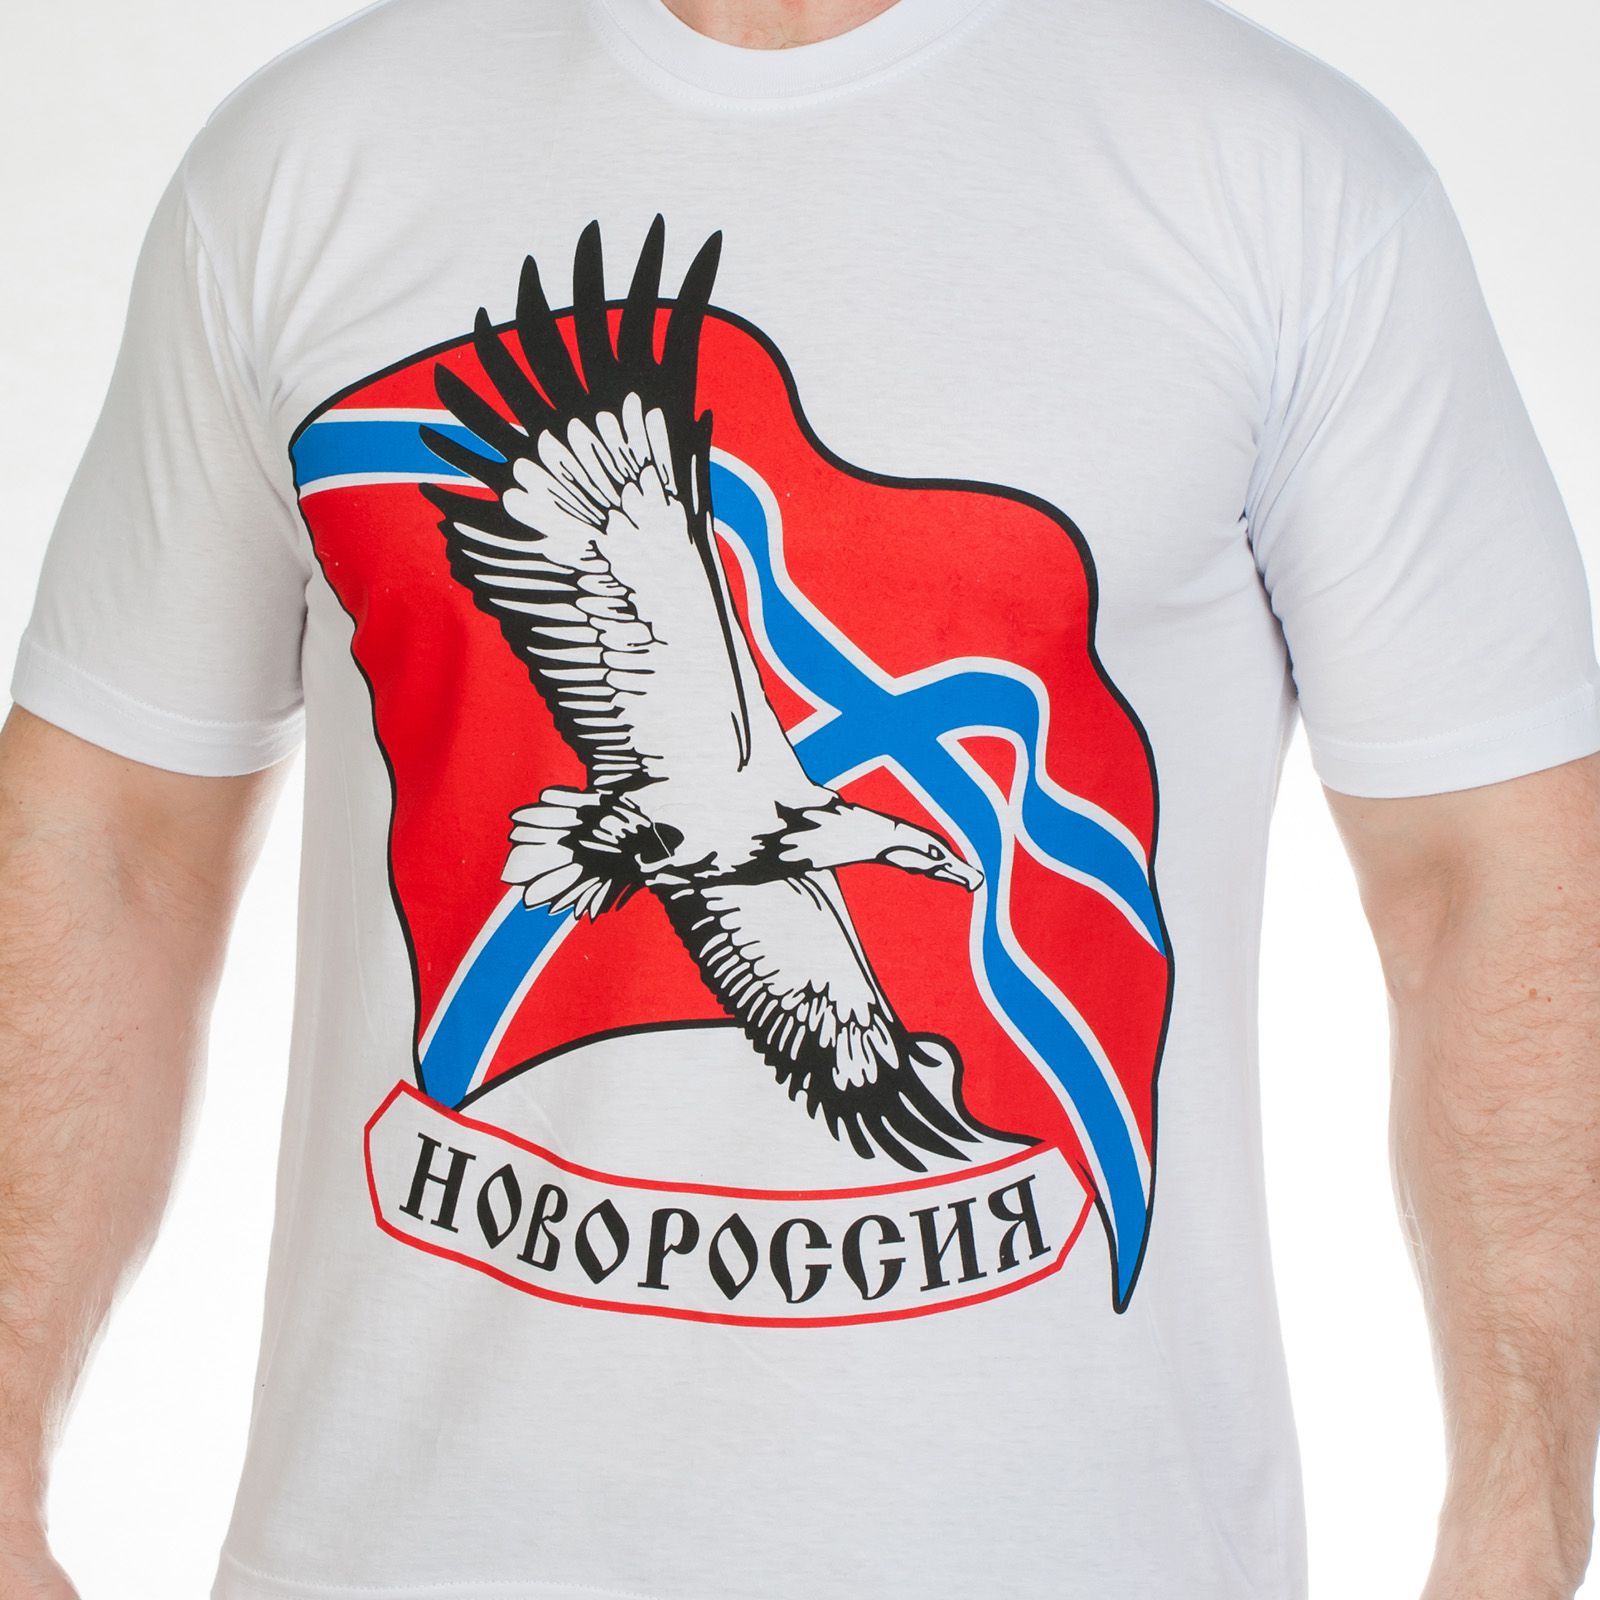 Купить футболку с надписью «Новороссия» в военторге Военпро 